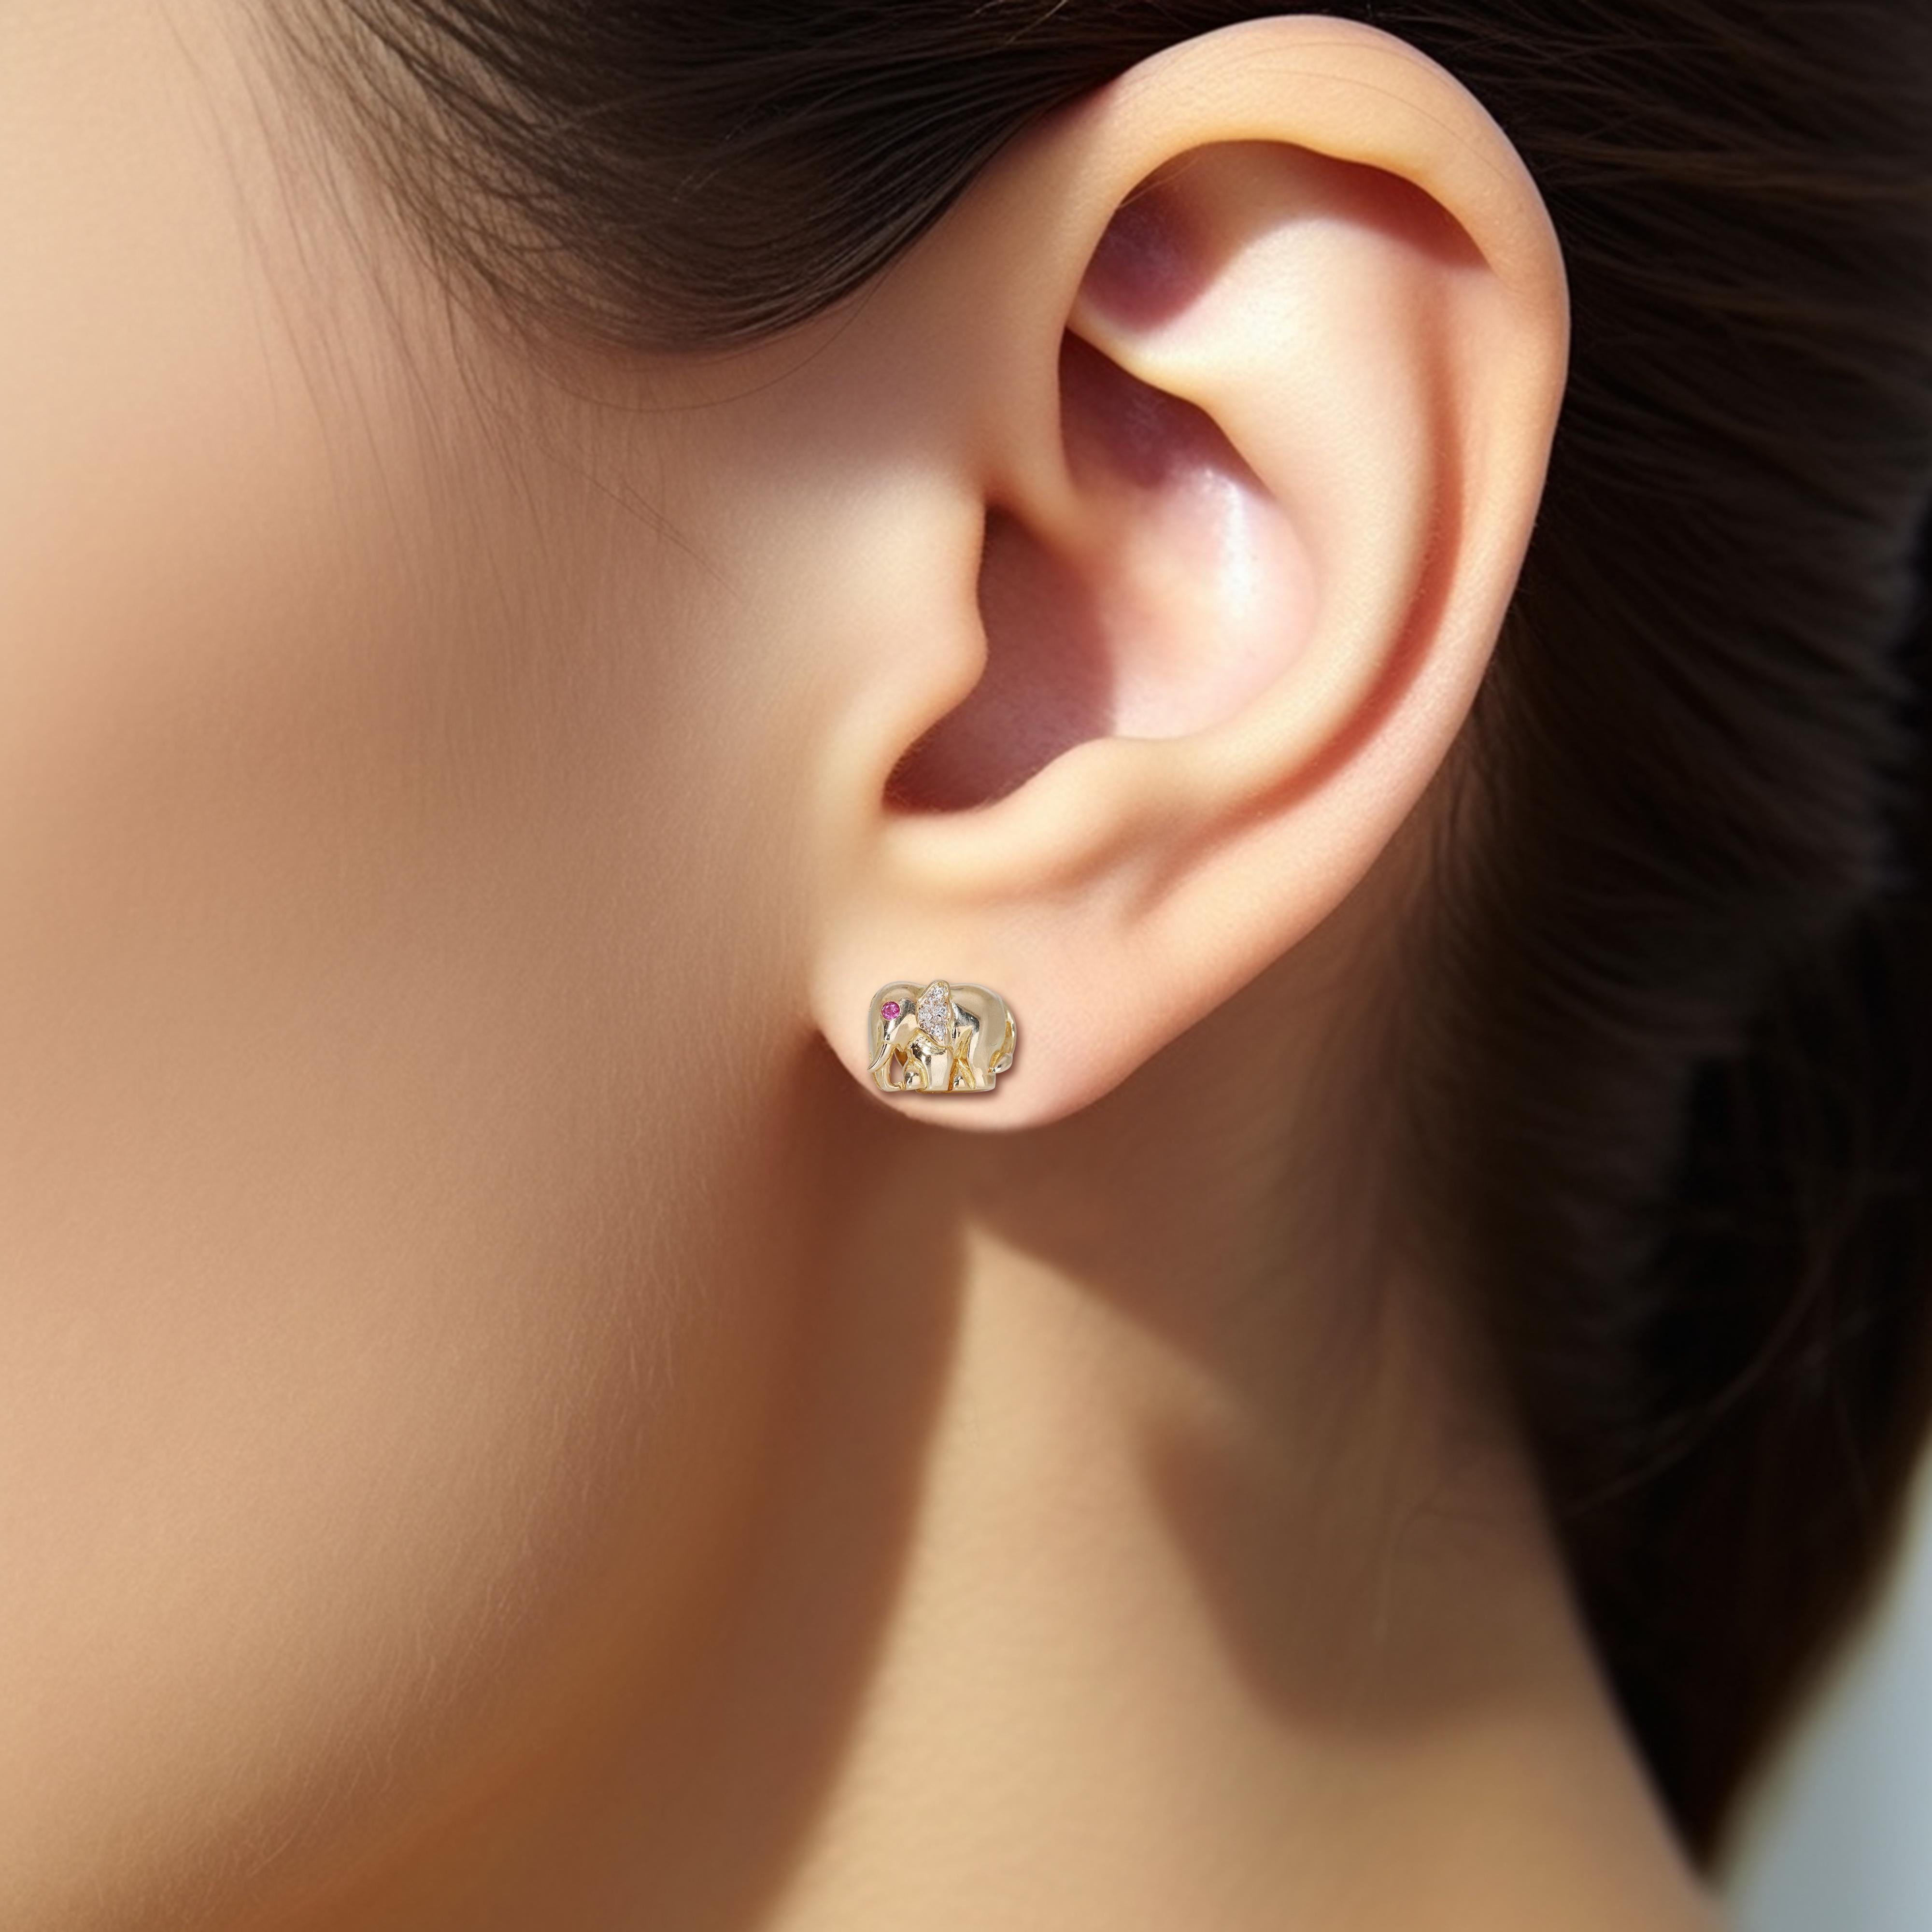 Lassen Sie sich von der zeitlosen Schönheit dieser bezaubernden Ohrringe mit Diamanten und Rubinen verzaubern. Acht funkelnde Diamanten und zwei bezaubernde Rubine stehlen mit ihrer satten roten Farbe die Show. Diese Ohrringe strahlen Brillanz und